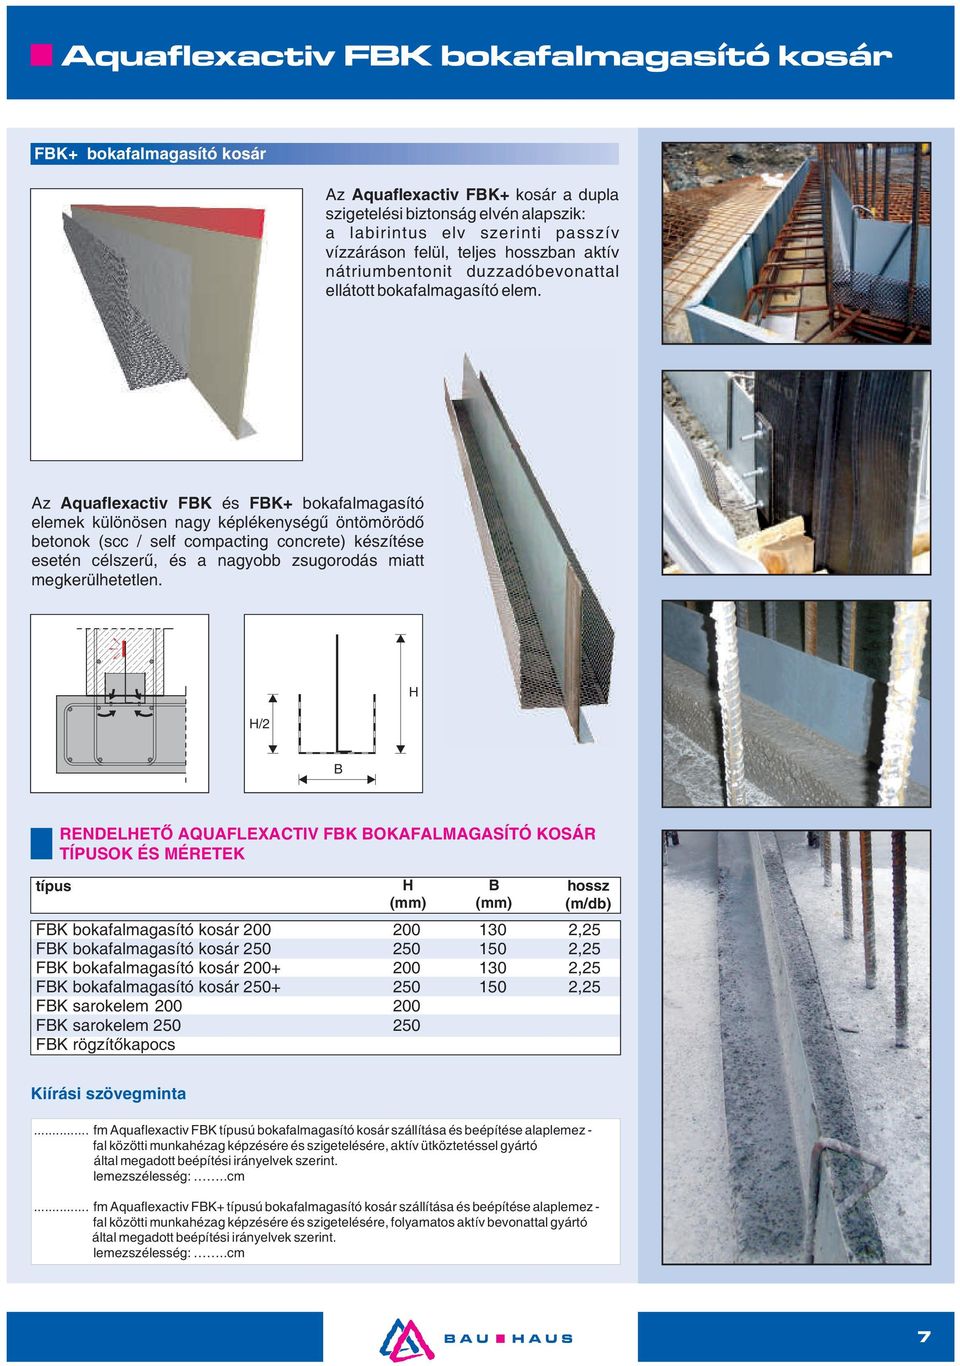 Az Aquaflexactiv FBK és FBK+ bokafalmagasító elemek különösen nagy képlékenységű öntömörödő betonok (scc / self compacting concrete) készítése esetén célszerű, és a nagyobb zsugorodás miatt